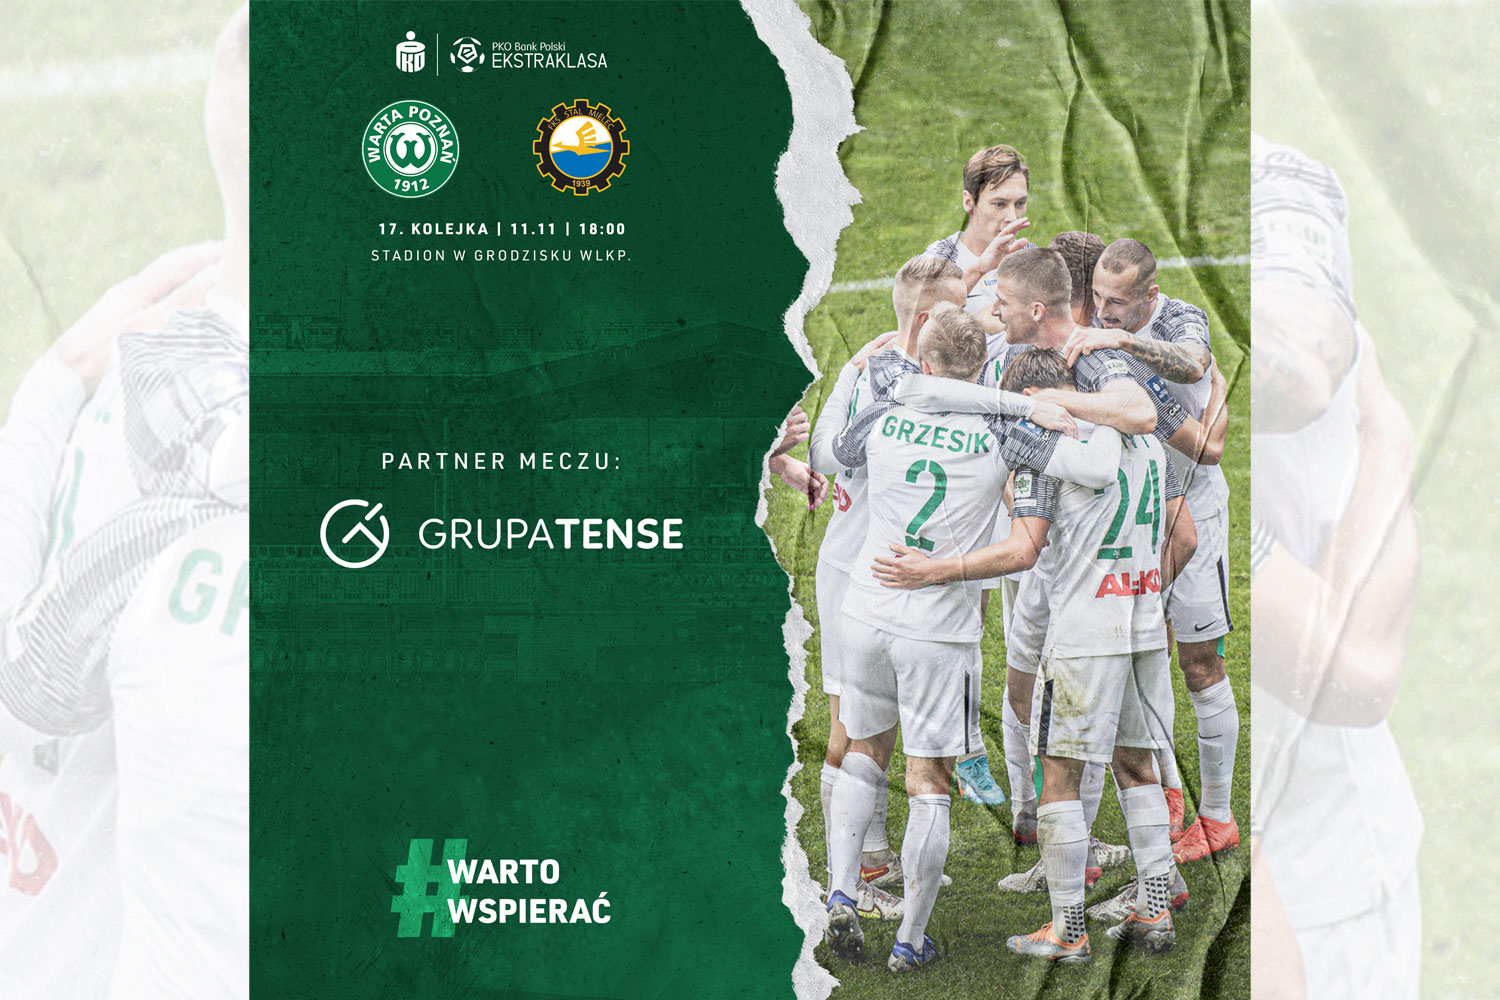 Grupa TENSE partnerem meczu Warta Poznań - Stal Mielec